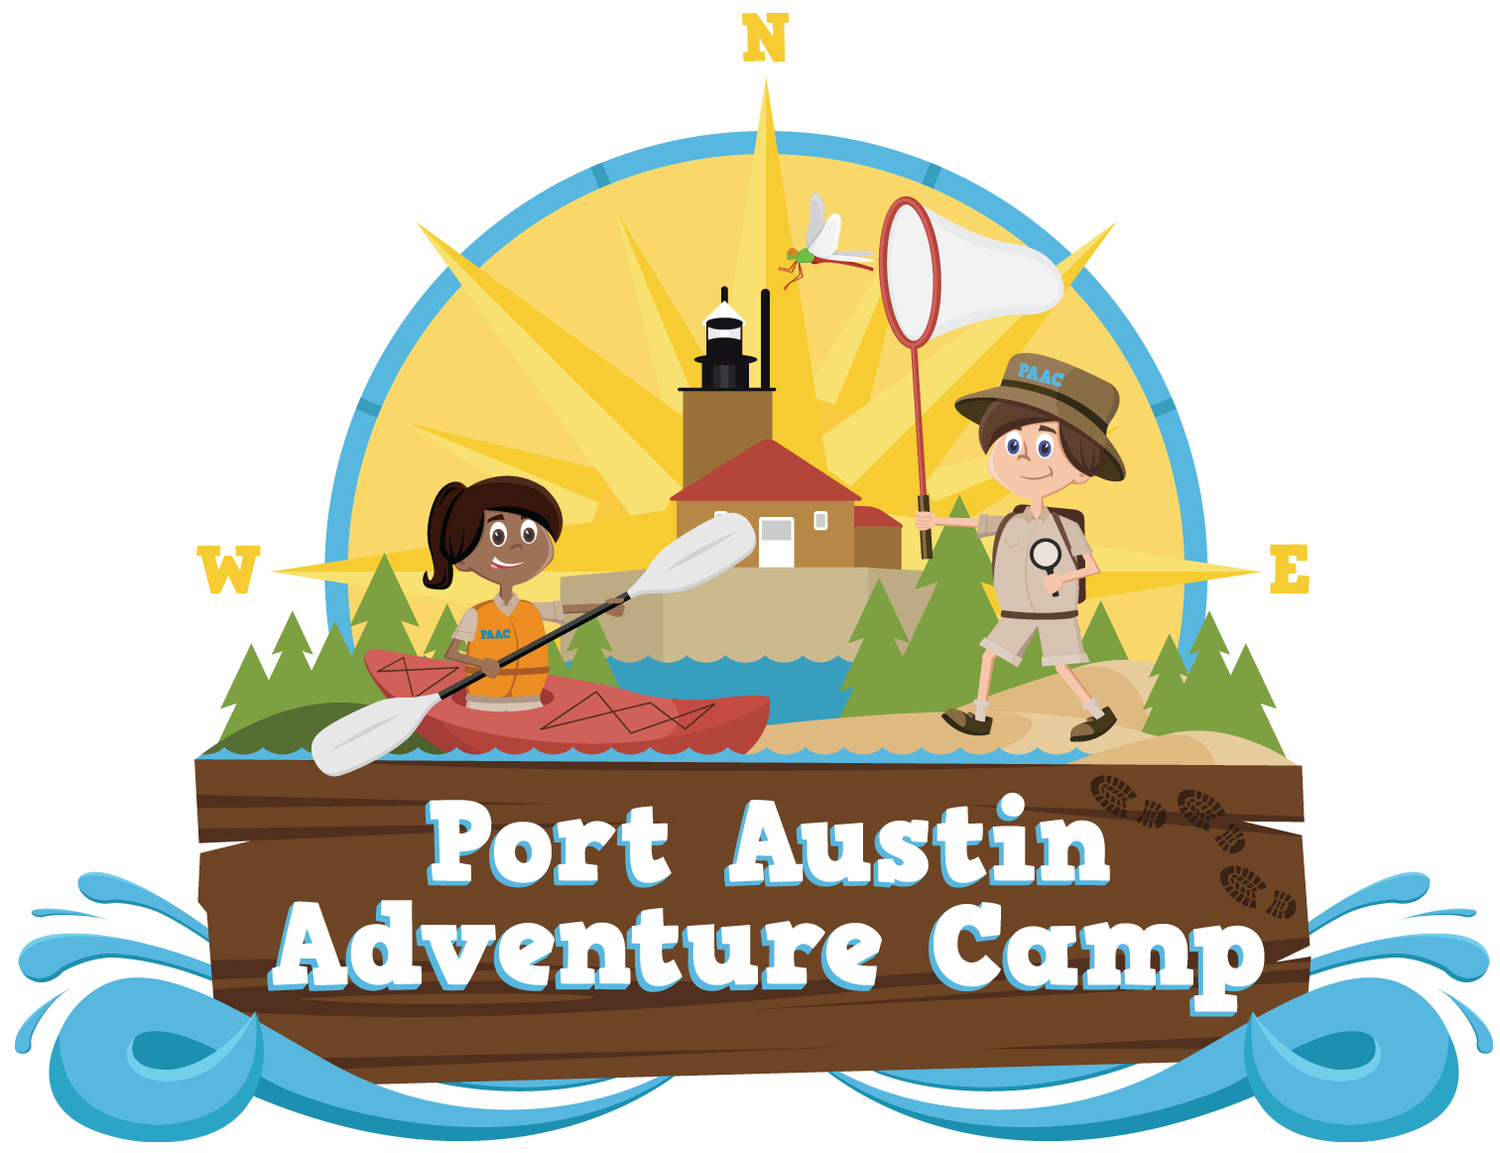 adventure clipart adventure camp